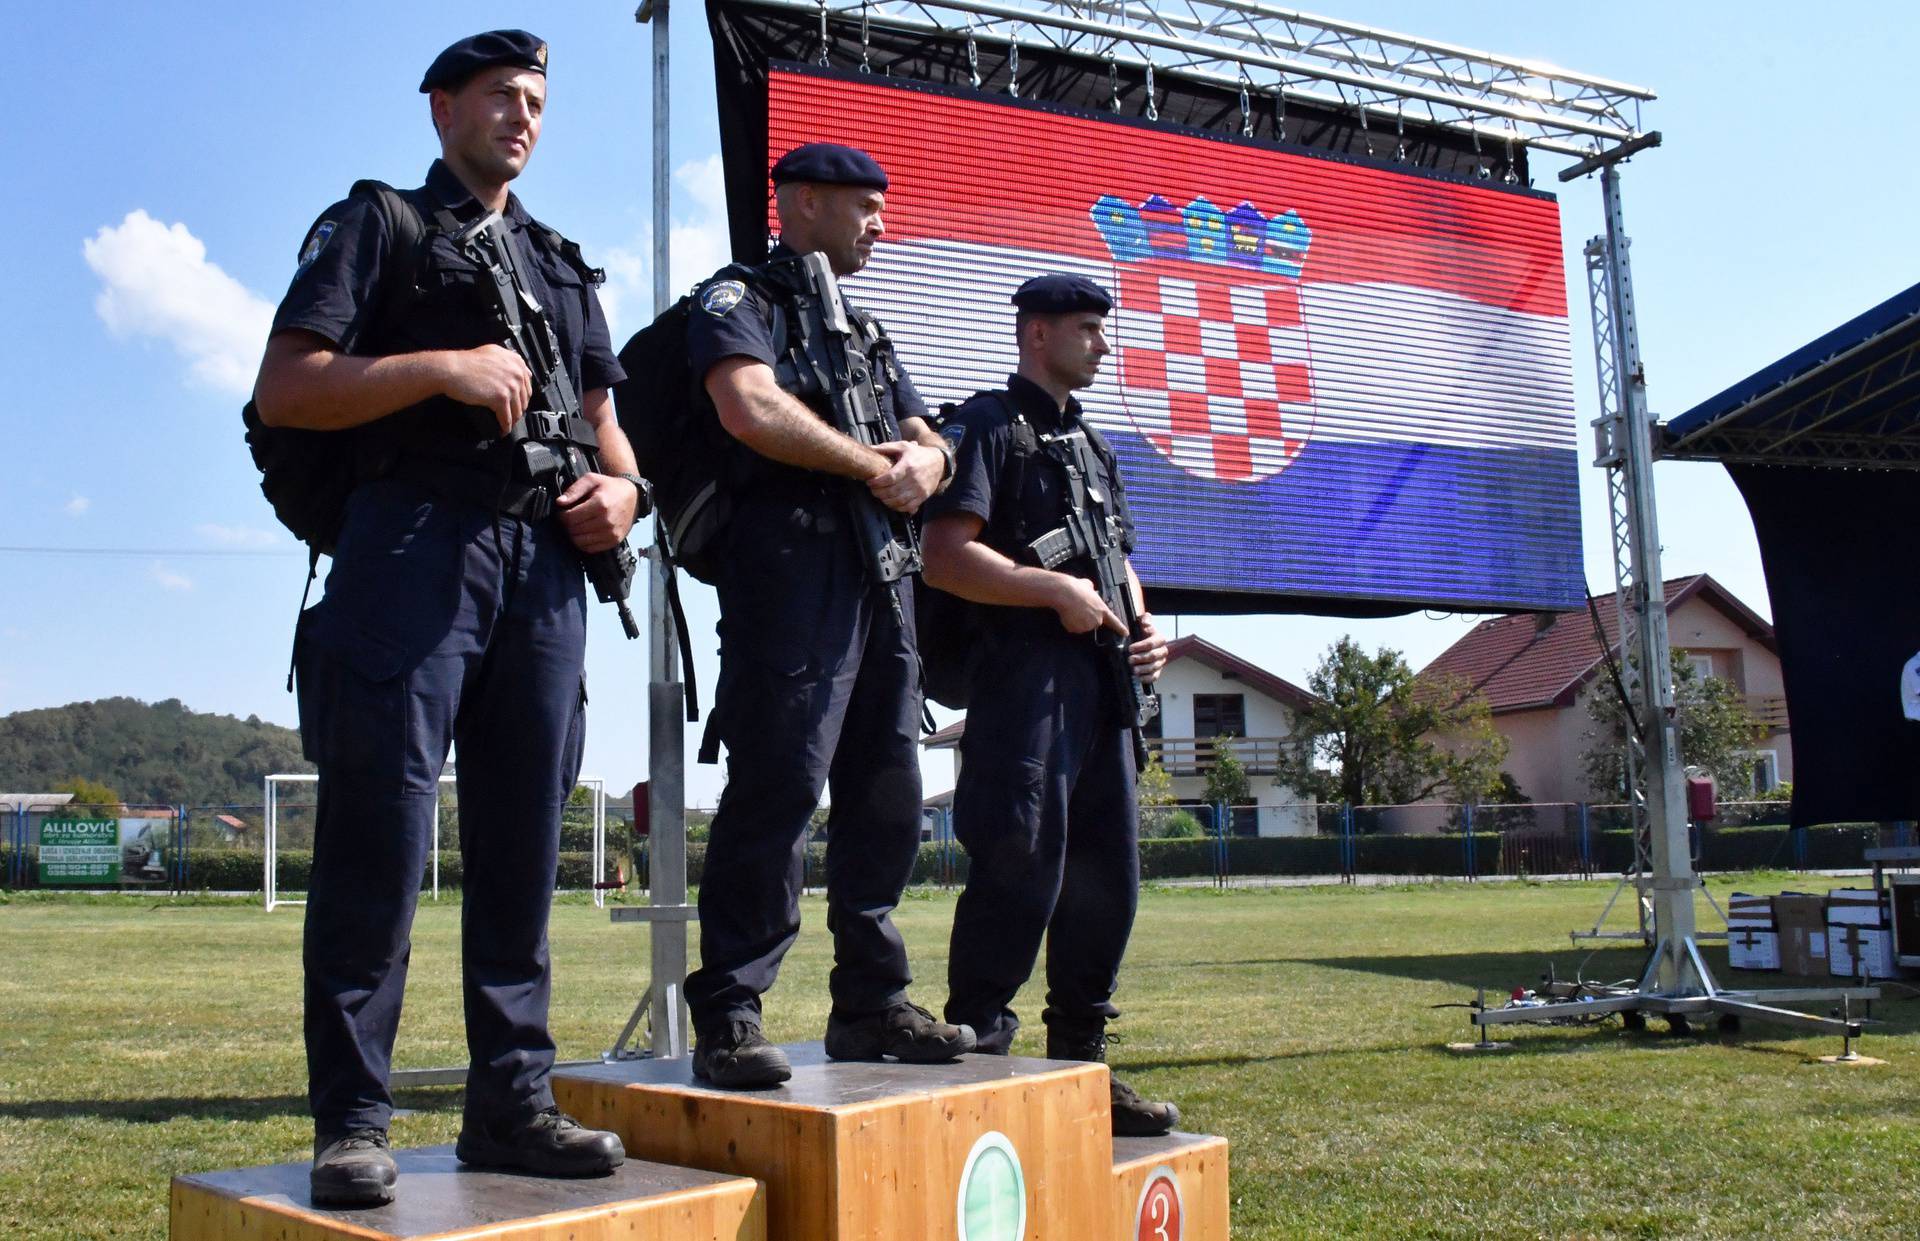 Slavonski Brod - Drugi memorijal "Šimo Đamić" - natjecanje za najspremnije policijske službenike.